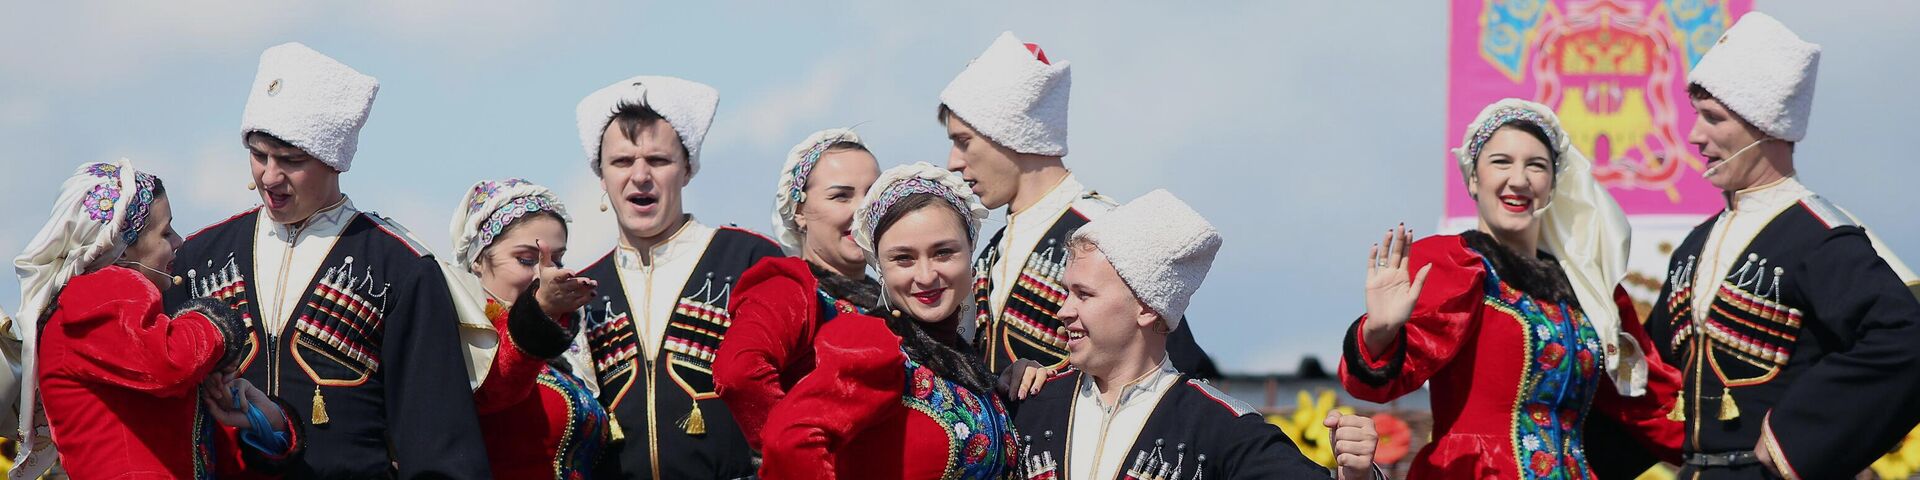 Фестиваль традиционной народной культуры Казачья слава - РИА Новости, 1920, 25.01.2021